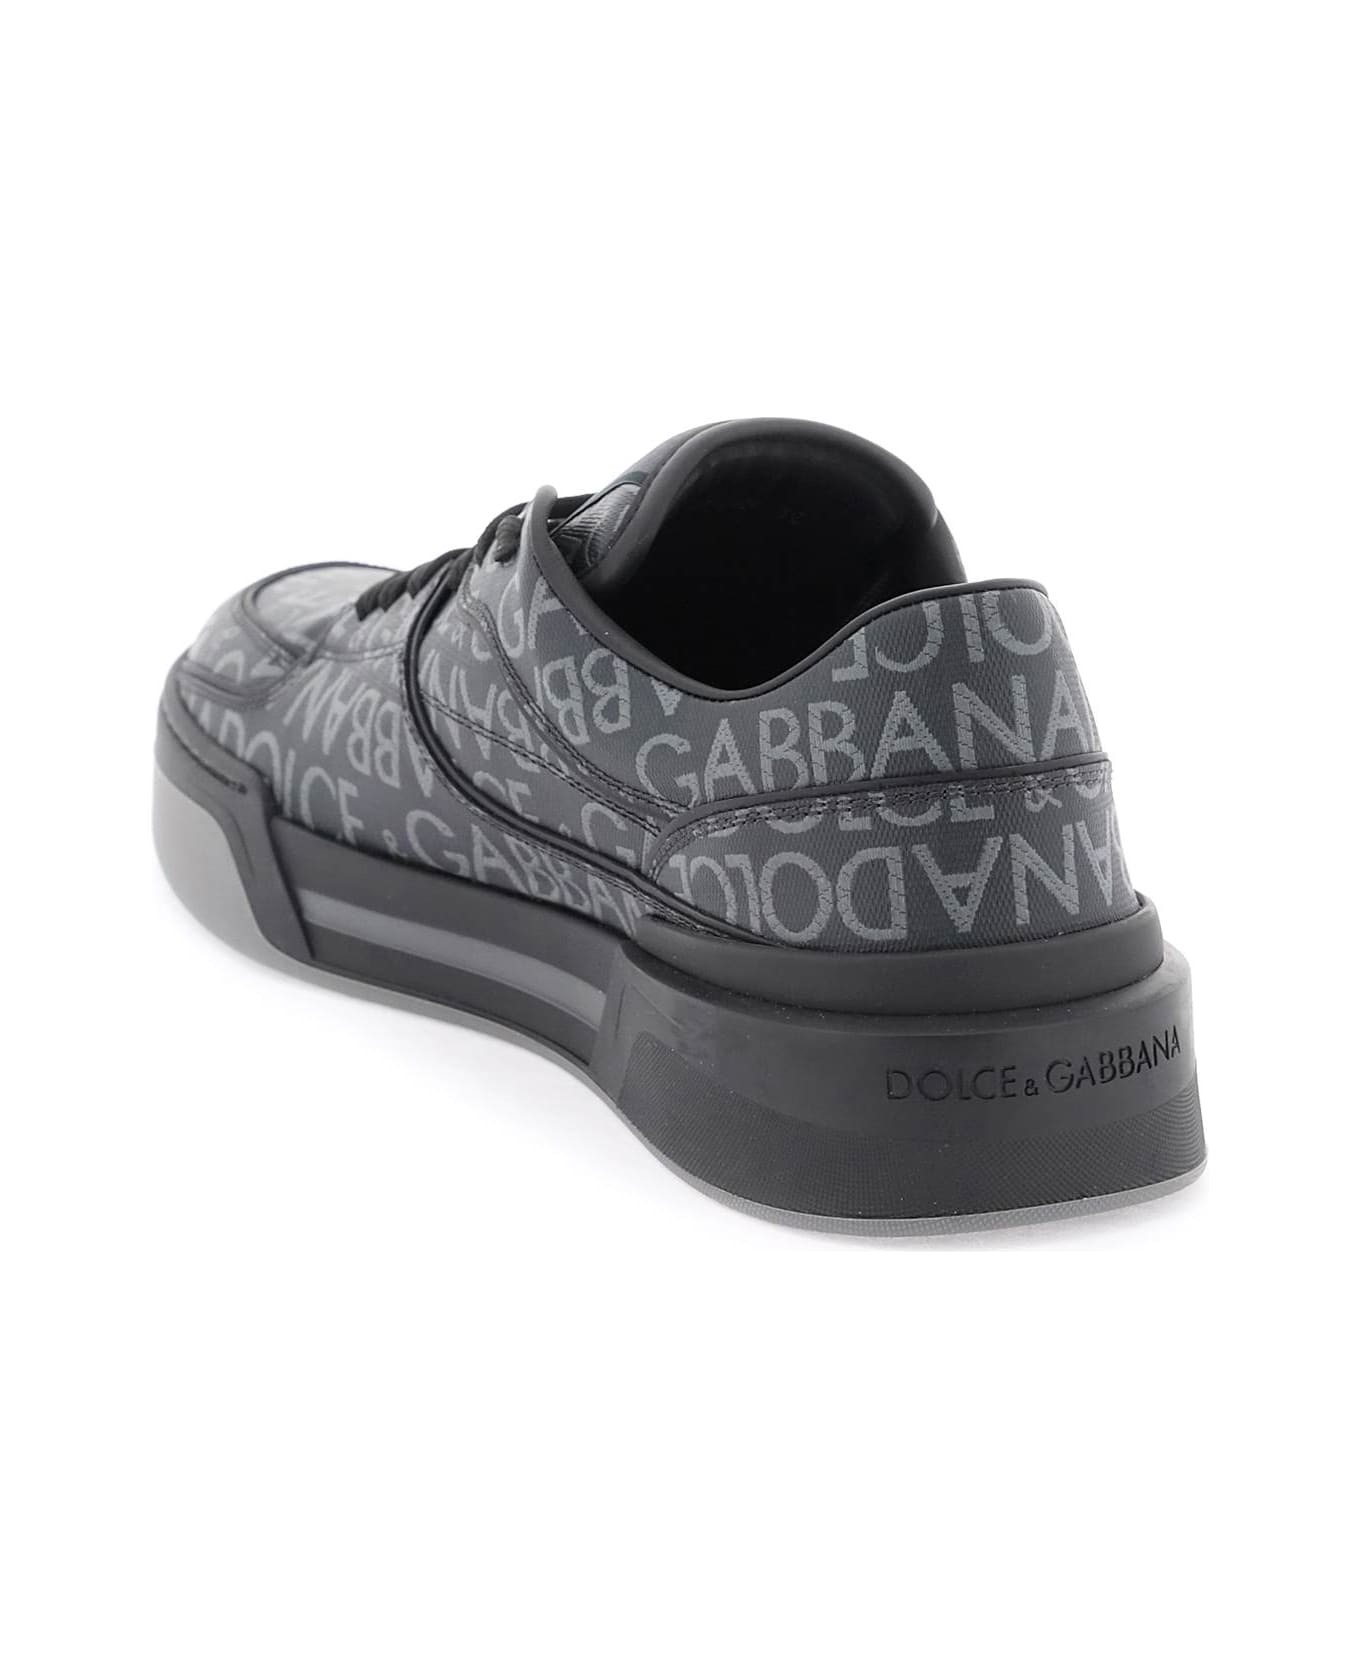 Dolce & Gabbana Roma Sneakers - Nero/grigio